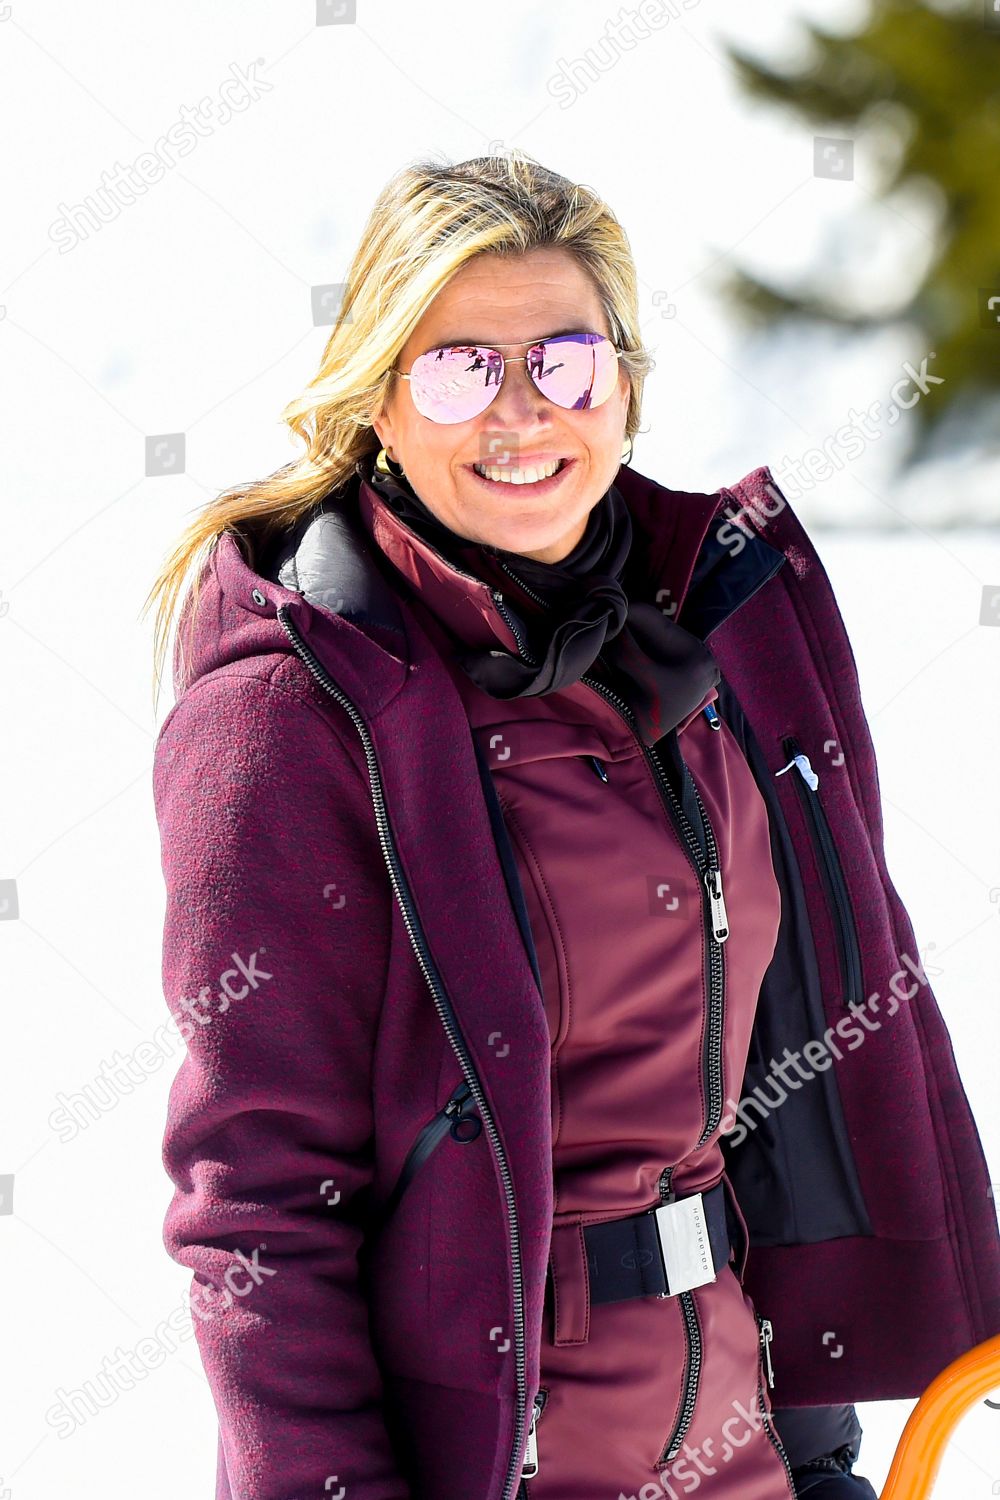 dutch-royals-winter-holiday-photocall-lech-austria-shutterstock-editorial-10118946q.jpg